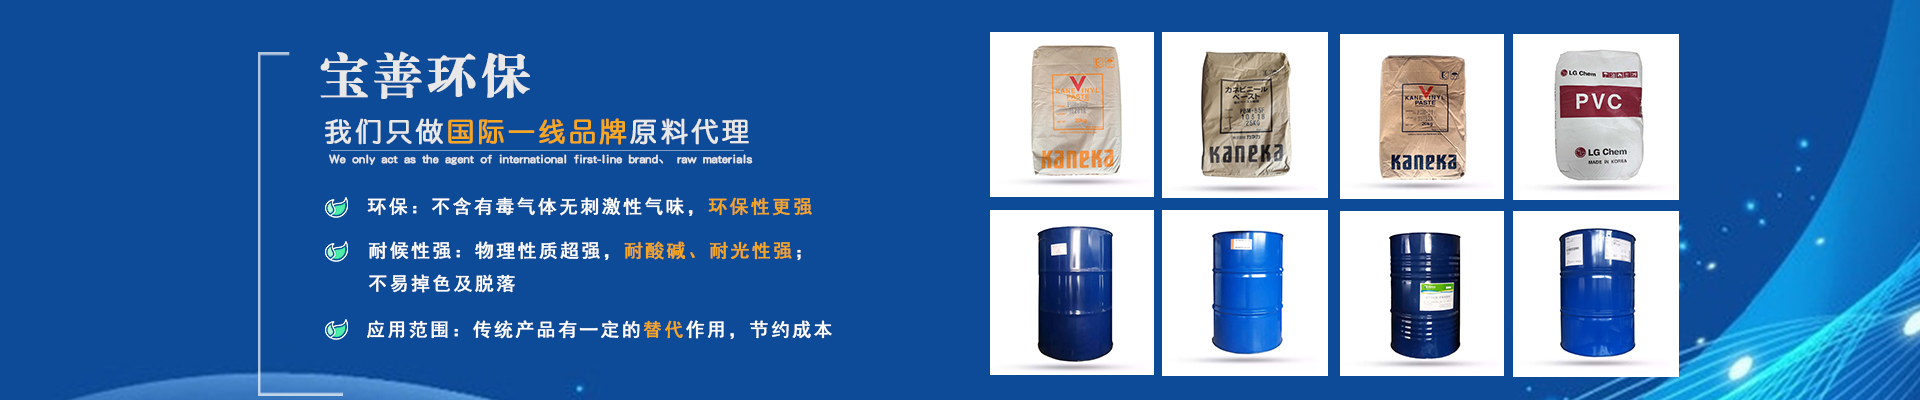 广东宝善贸易有限公司:PVC增硬油TXIB